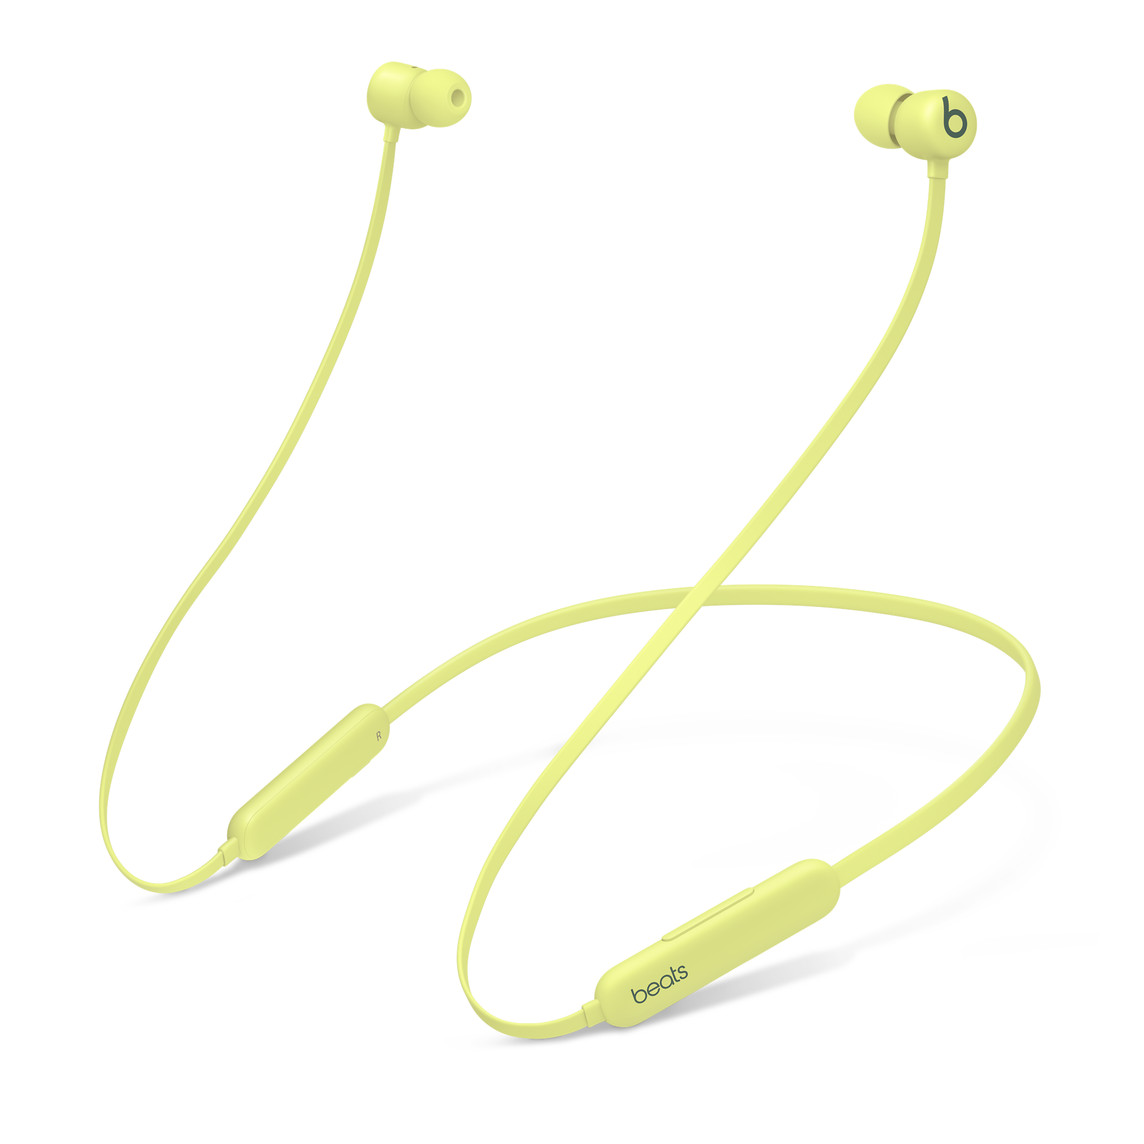 Los audífonos Beats Flex inalámbricos para todo el día amarillo cítrico tienen un diseño acústico de doble cámara para lograr una separación estéreo excepcional con bajos potentes y precisos.